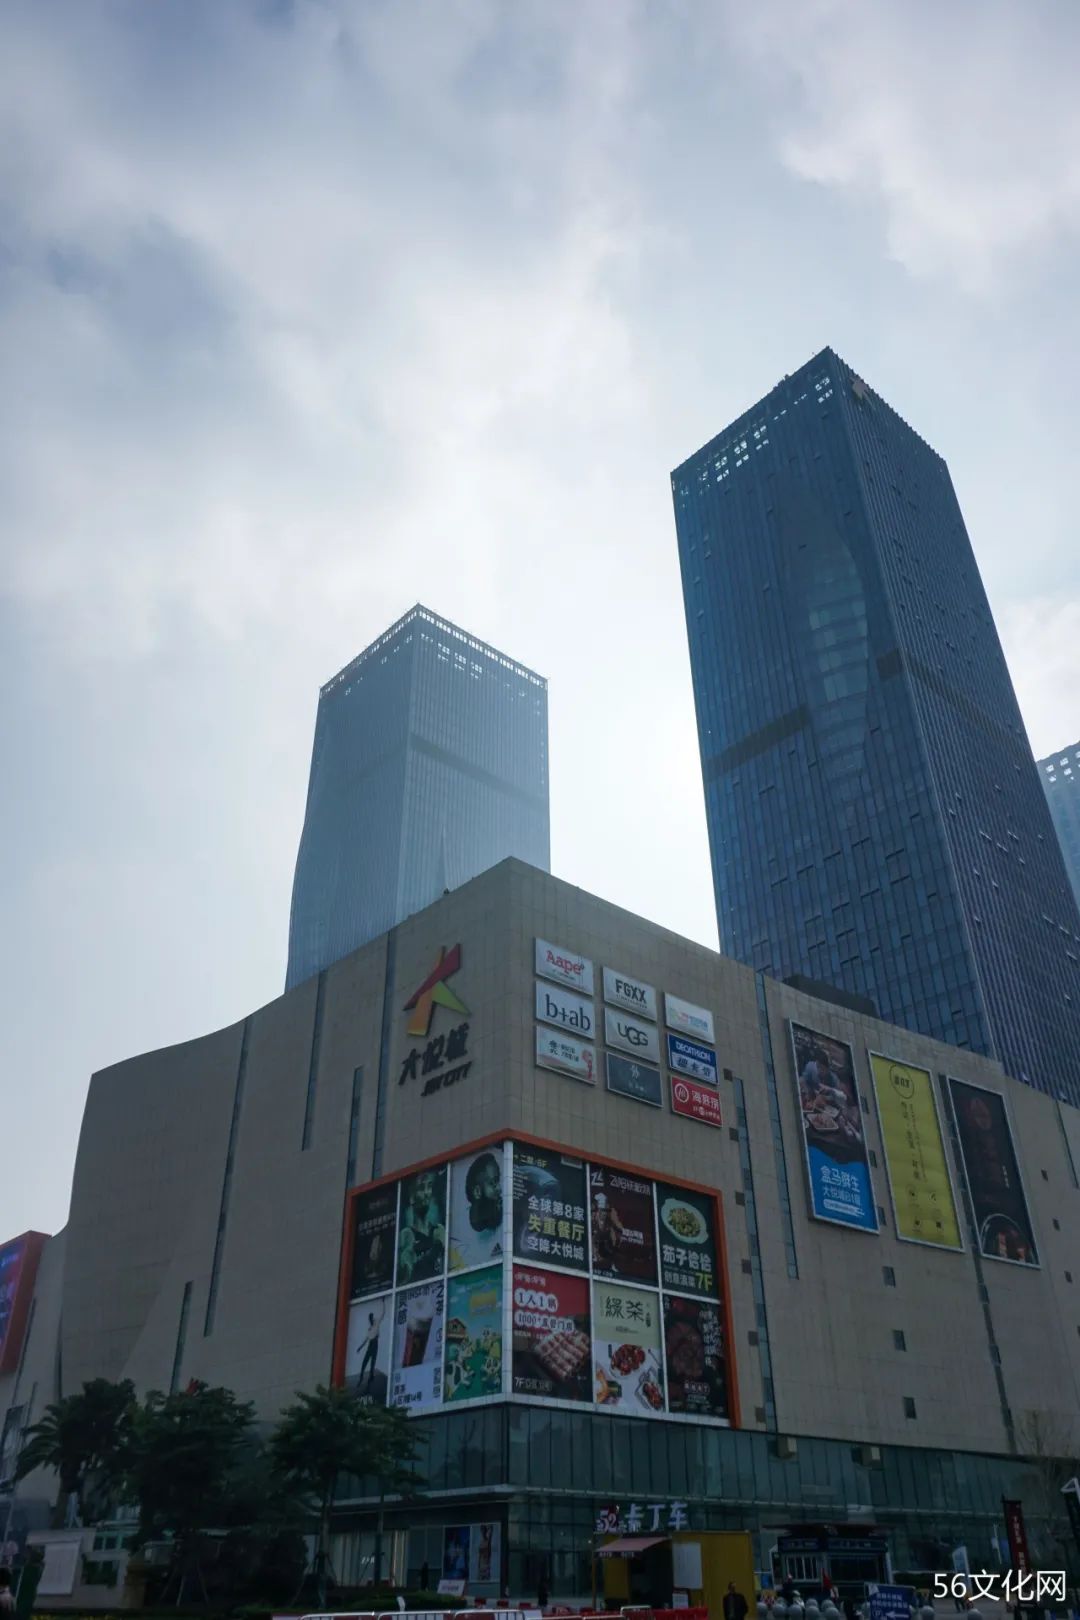 曹雄艺术馆：云南最大私人艺术馆，竟藏在购物中心里